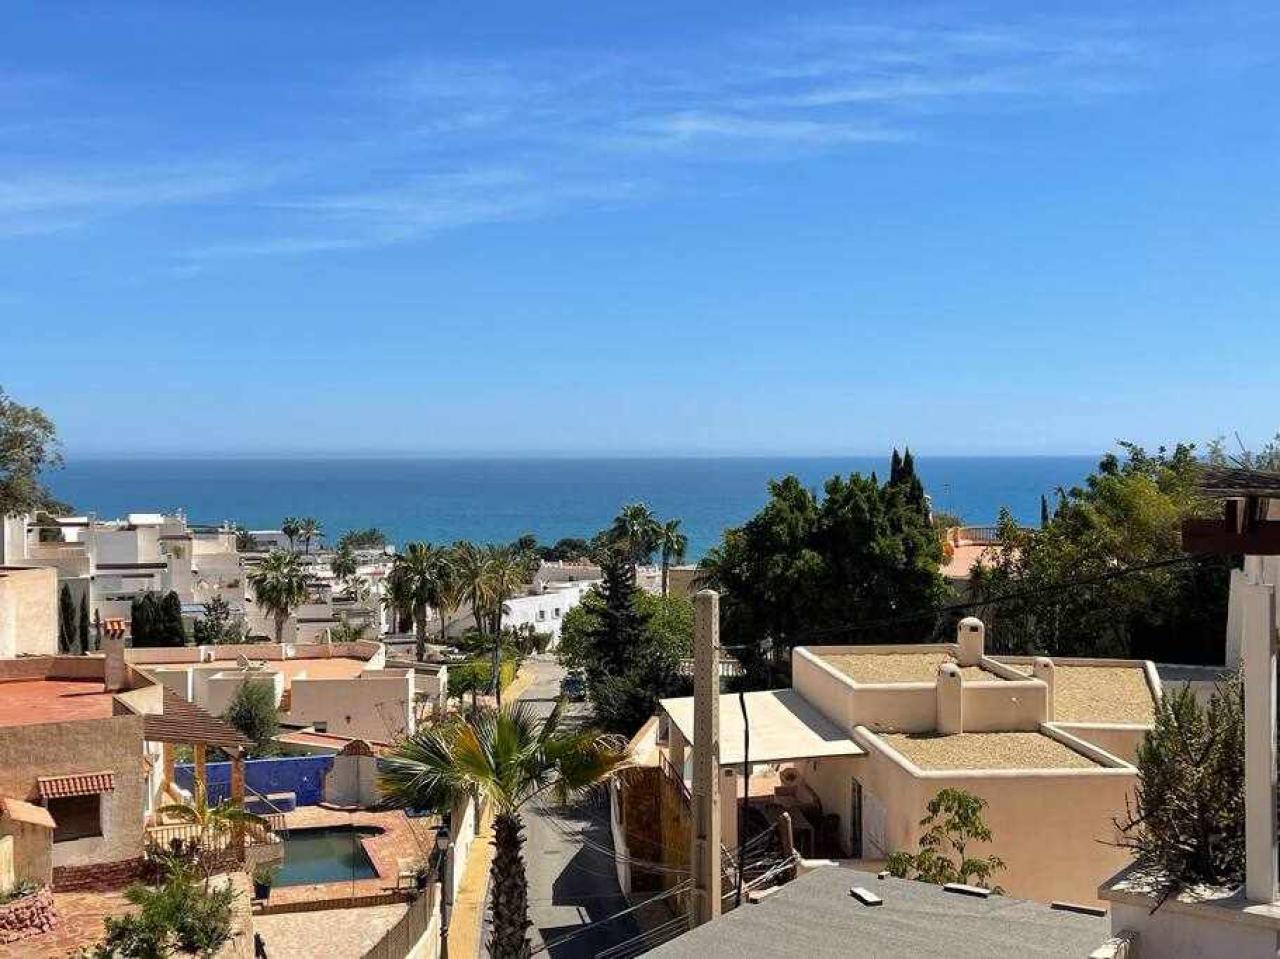 Vista del Mar lovely 1 bedroom apartment sea views: Apartment for Rent in Mojácar, Almería